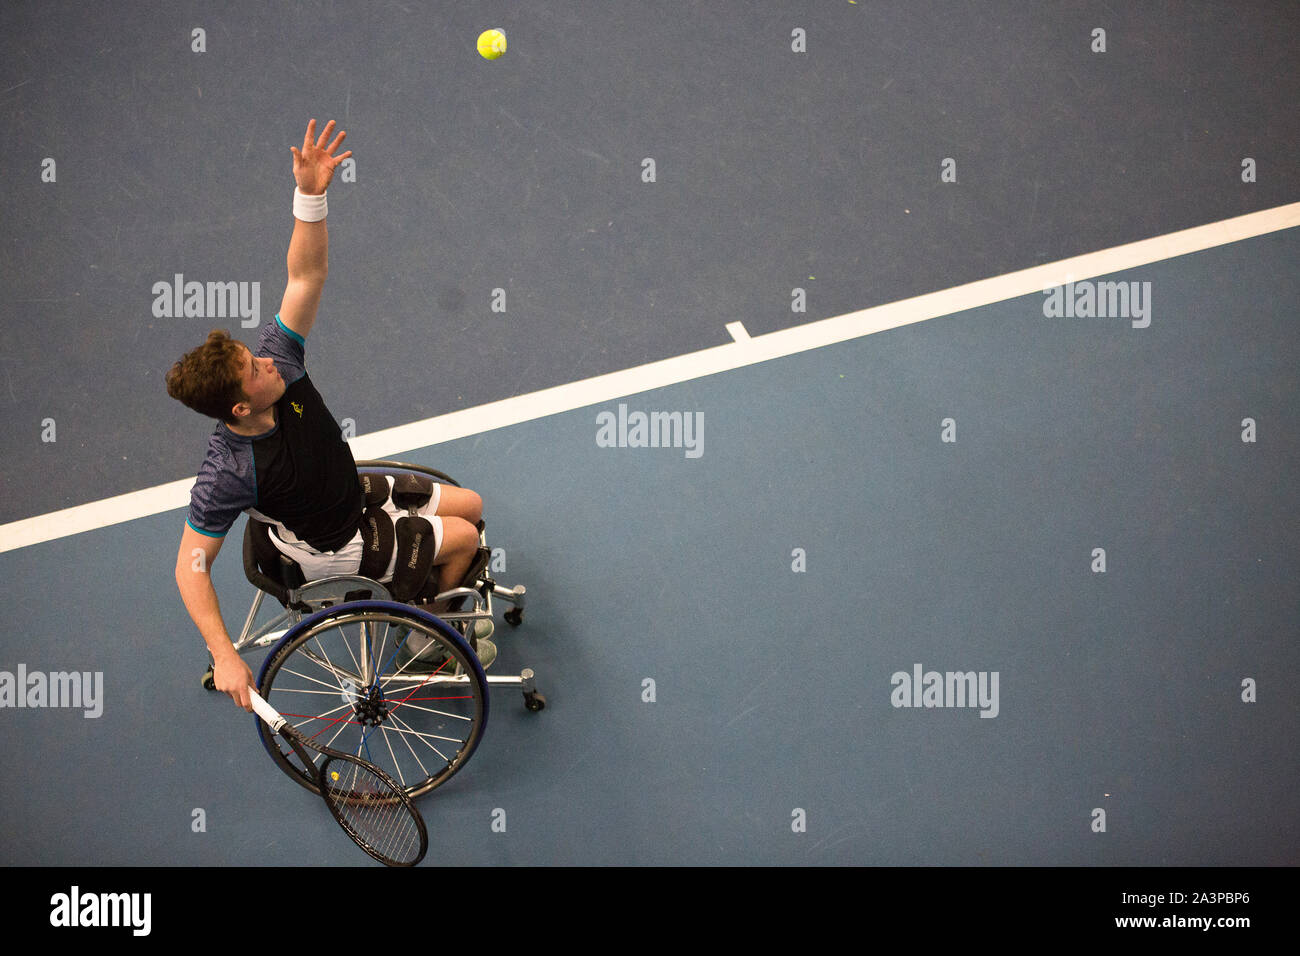 Alfie Hewett jouant dans un tournoi international de tennis en fauteuil roulant. Il devient numéro un mondial ici. Banque D'Images